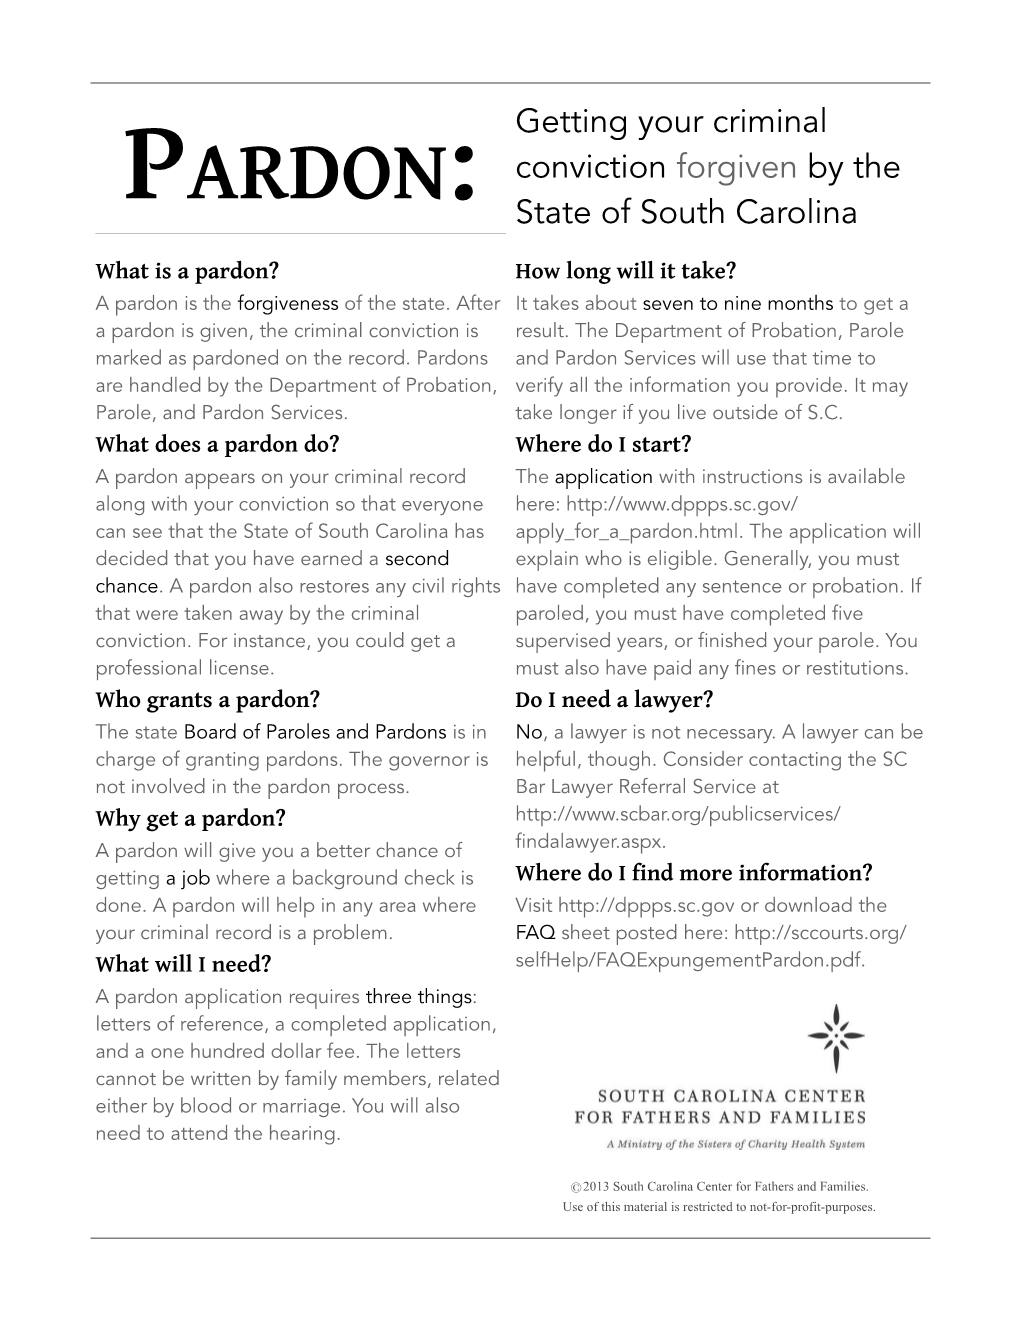 PARDON: State of South Carolina